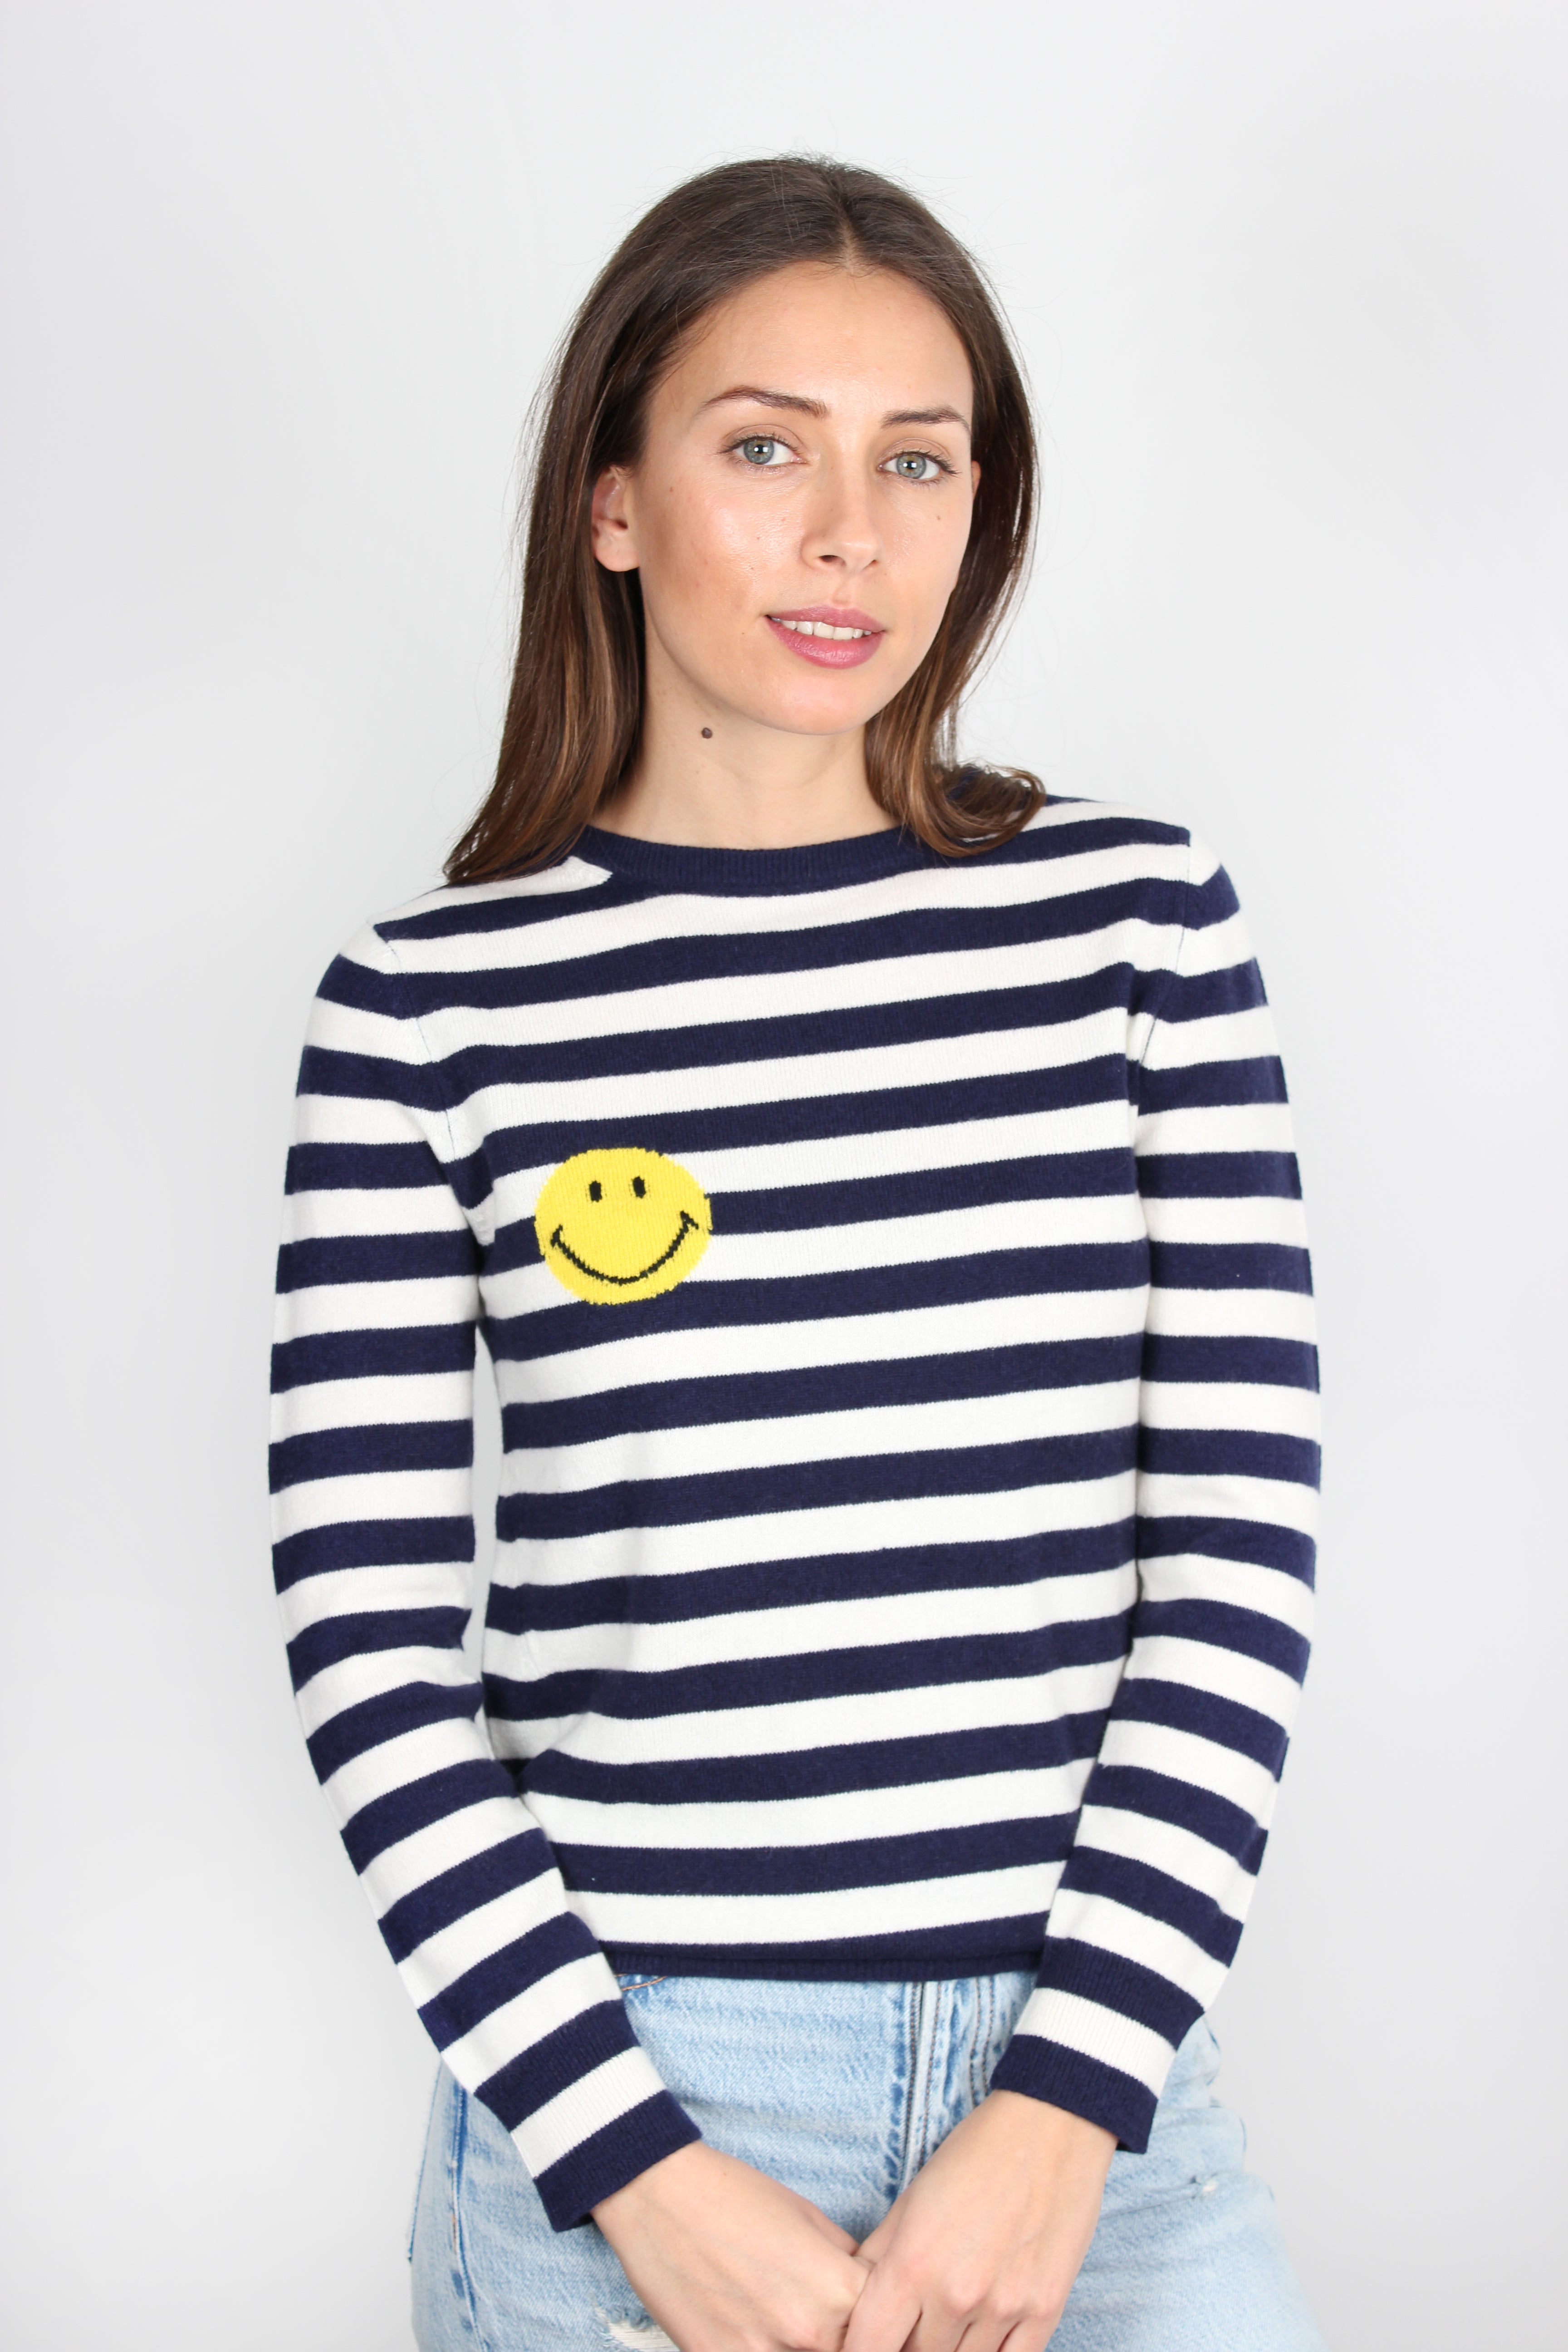 Jumper 1234 Smiley striped cashmere jumper